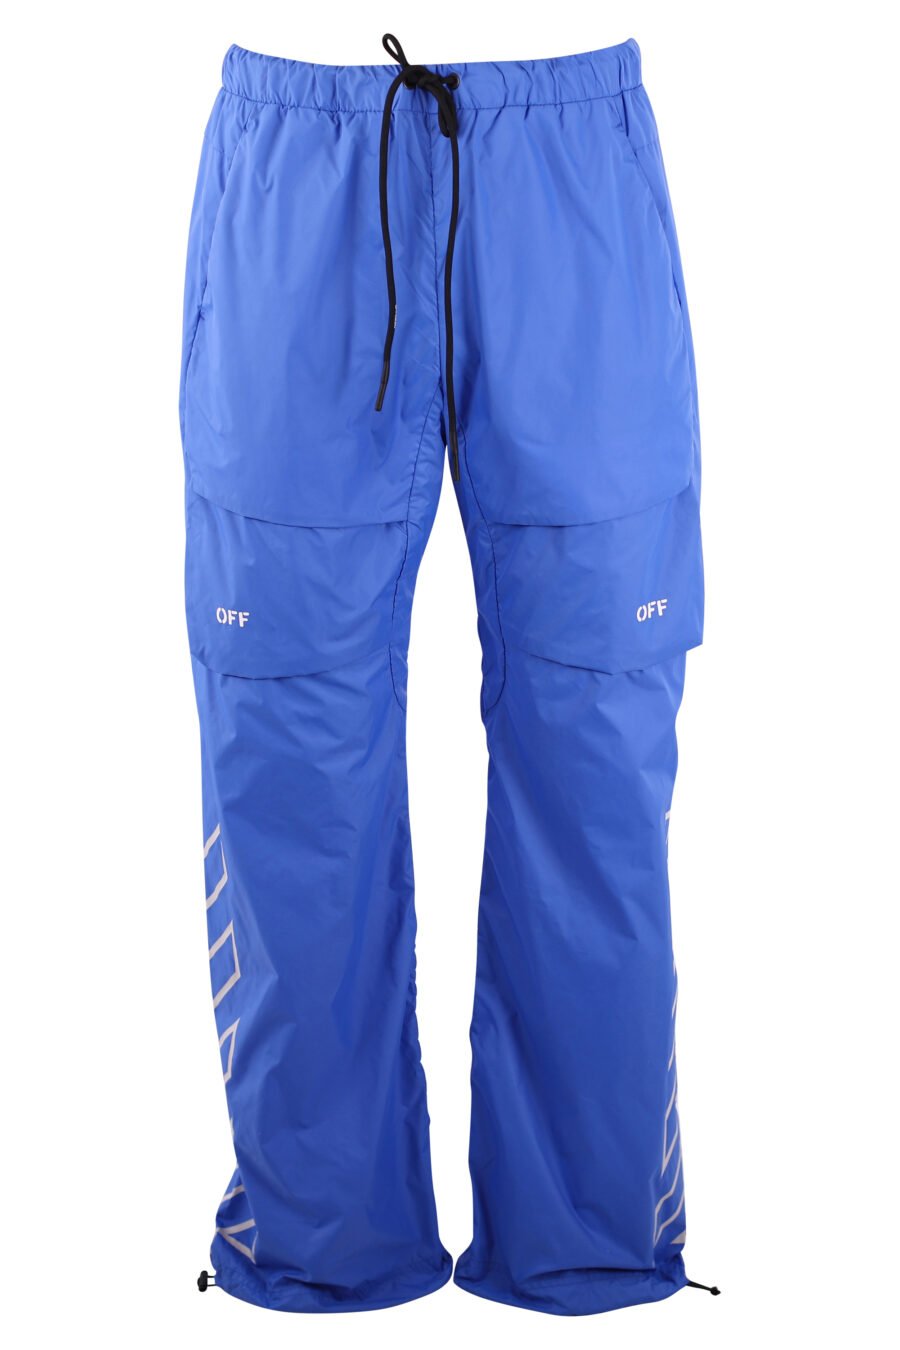 Pantalon cargo azul logo blanco "Diagonals" - IMG 3181